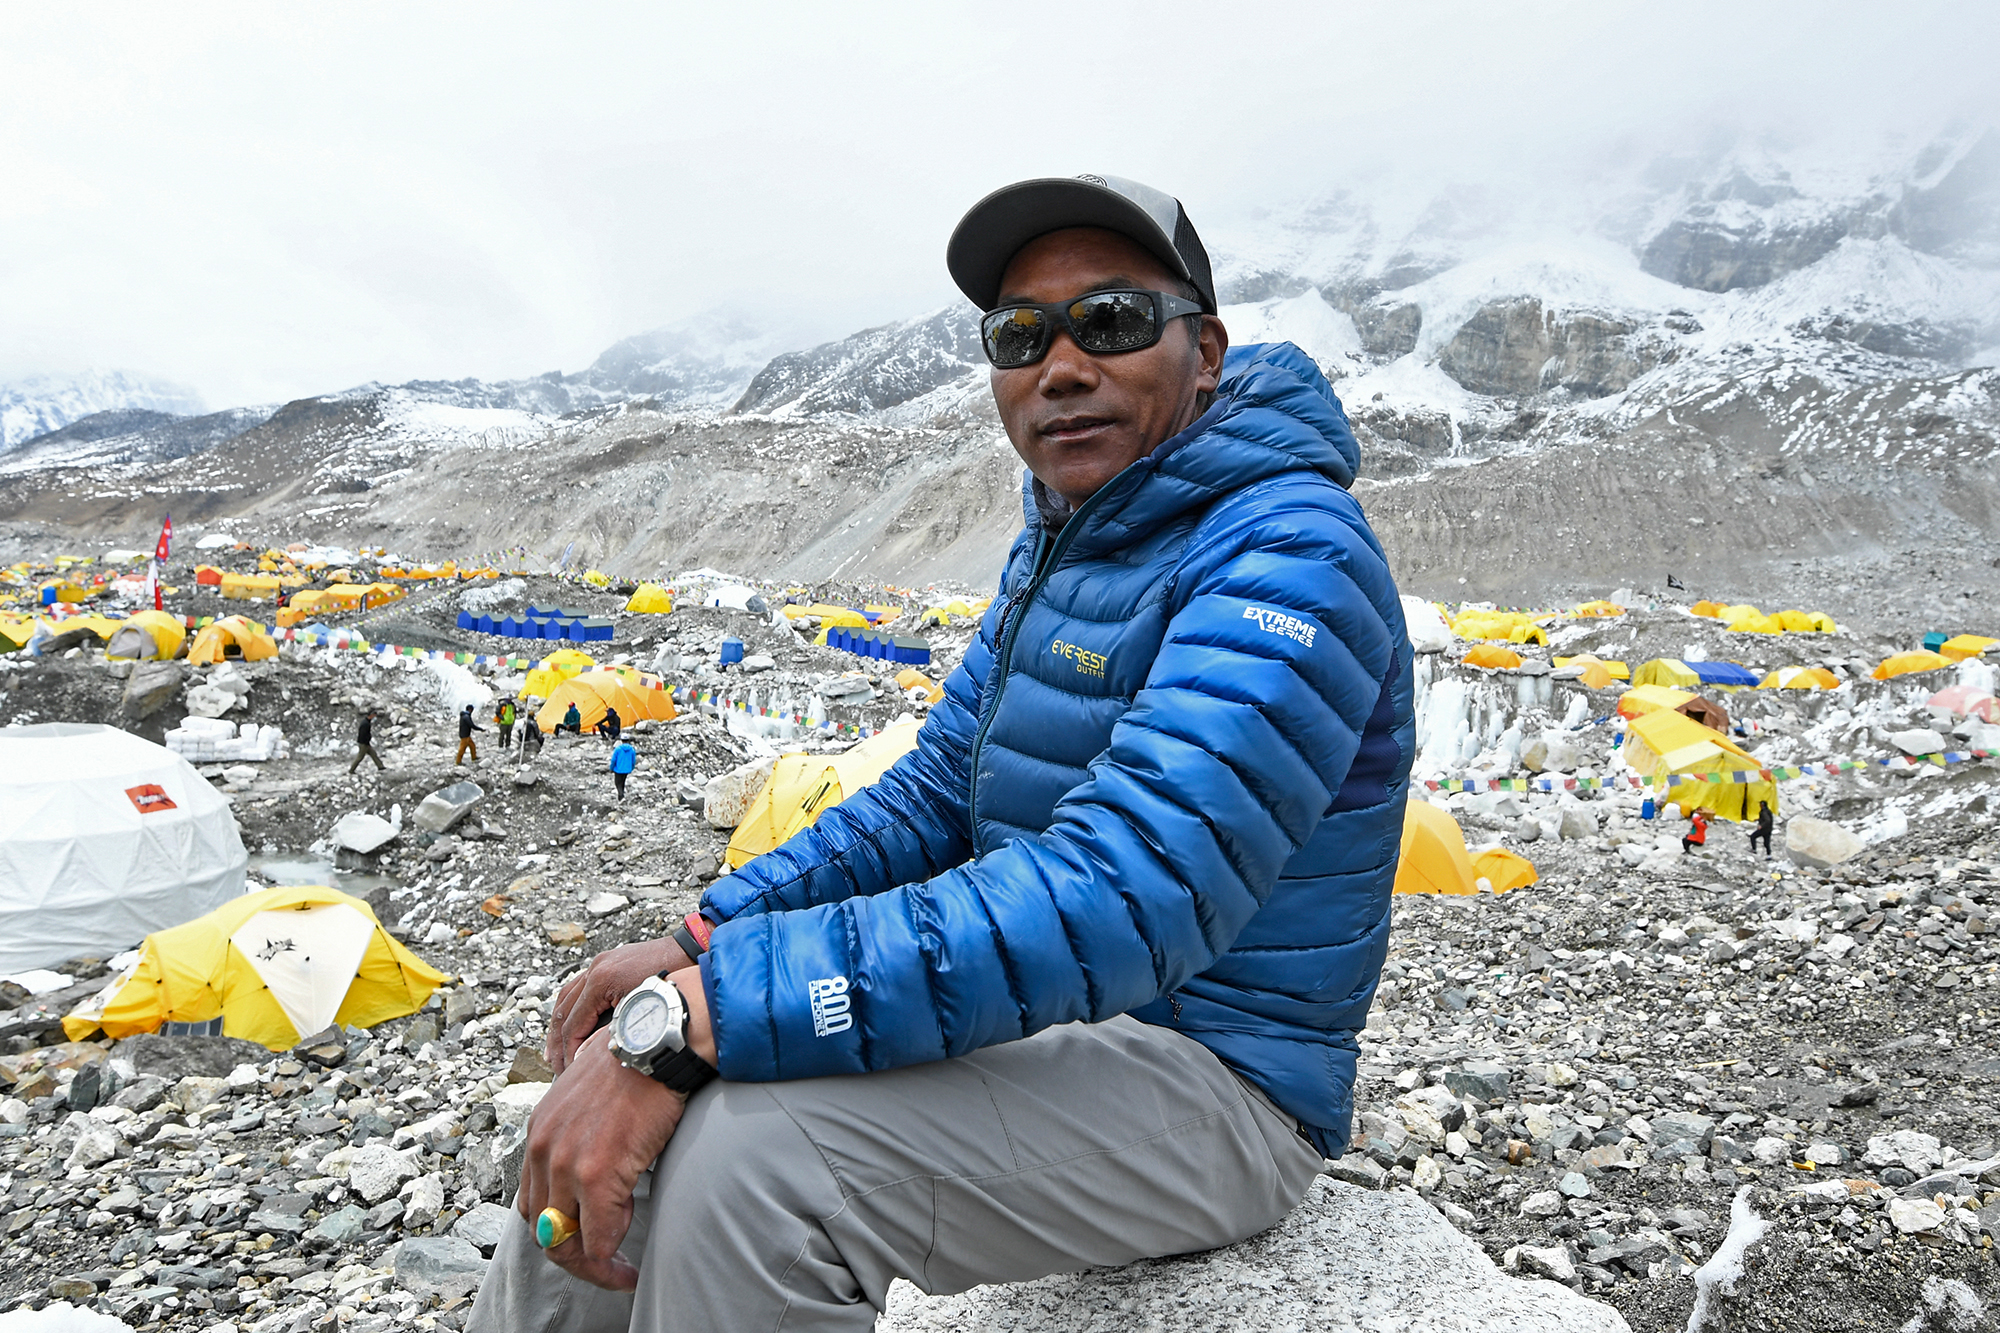 Rekordhalter mit 30 Mount-Everest-Besteigungen: Kami Rita